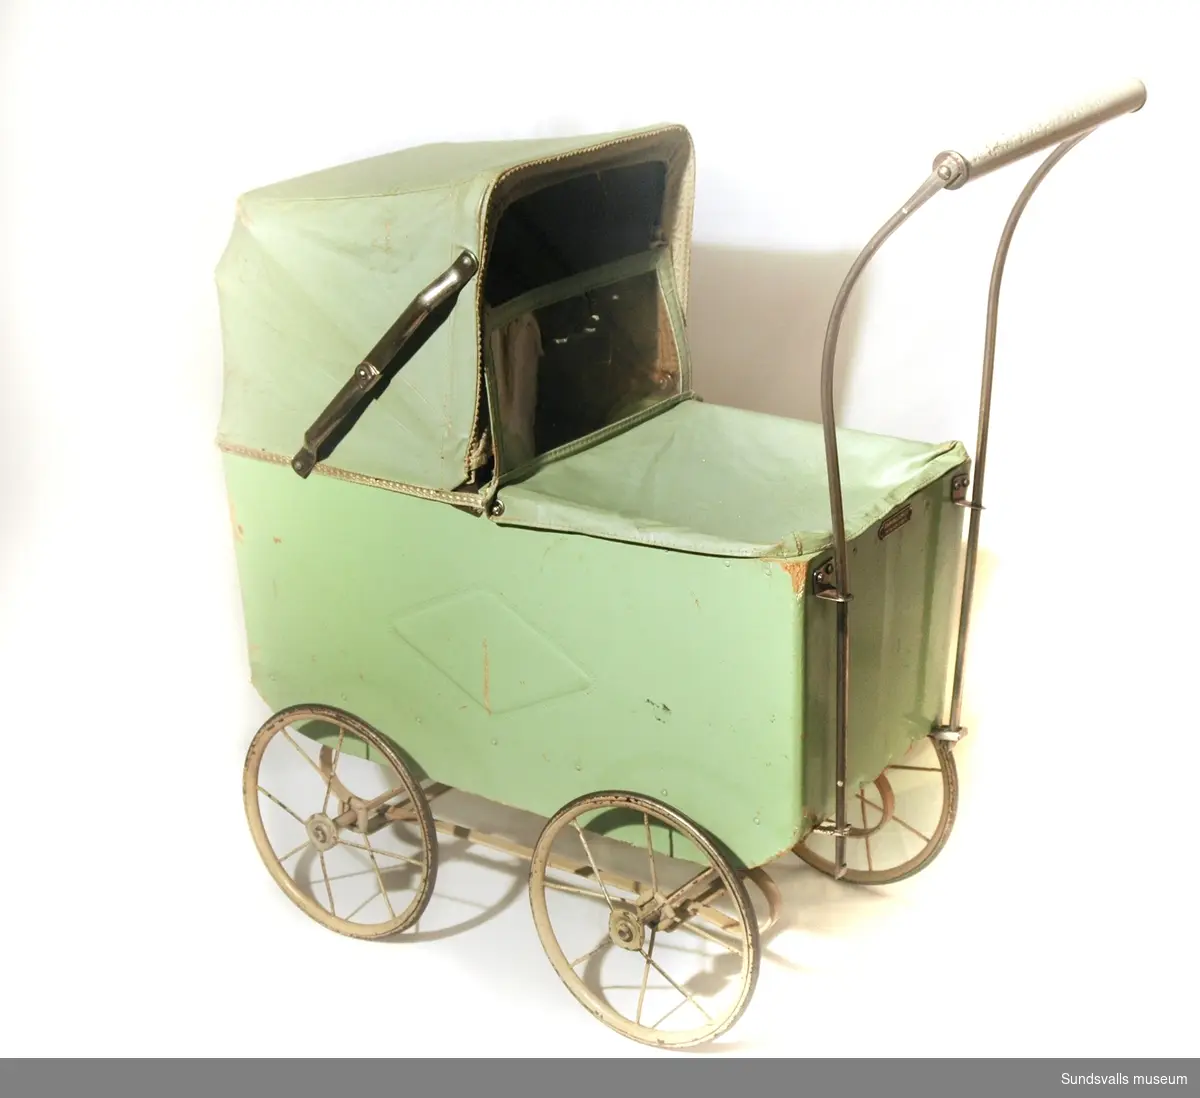 Dockvagn i ljusgrönt, med vagn av trä och suflett av vaxduk. På vagnens sida finns ett mönster i form av en fyrkant. I vagnen ligger även en virkad filt.